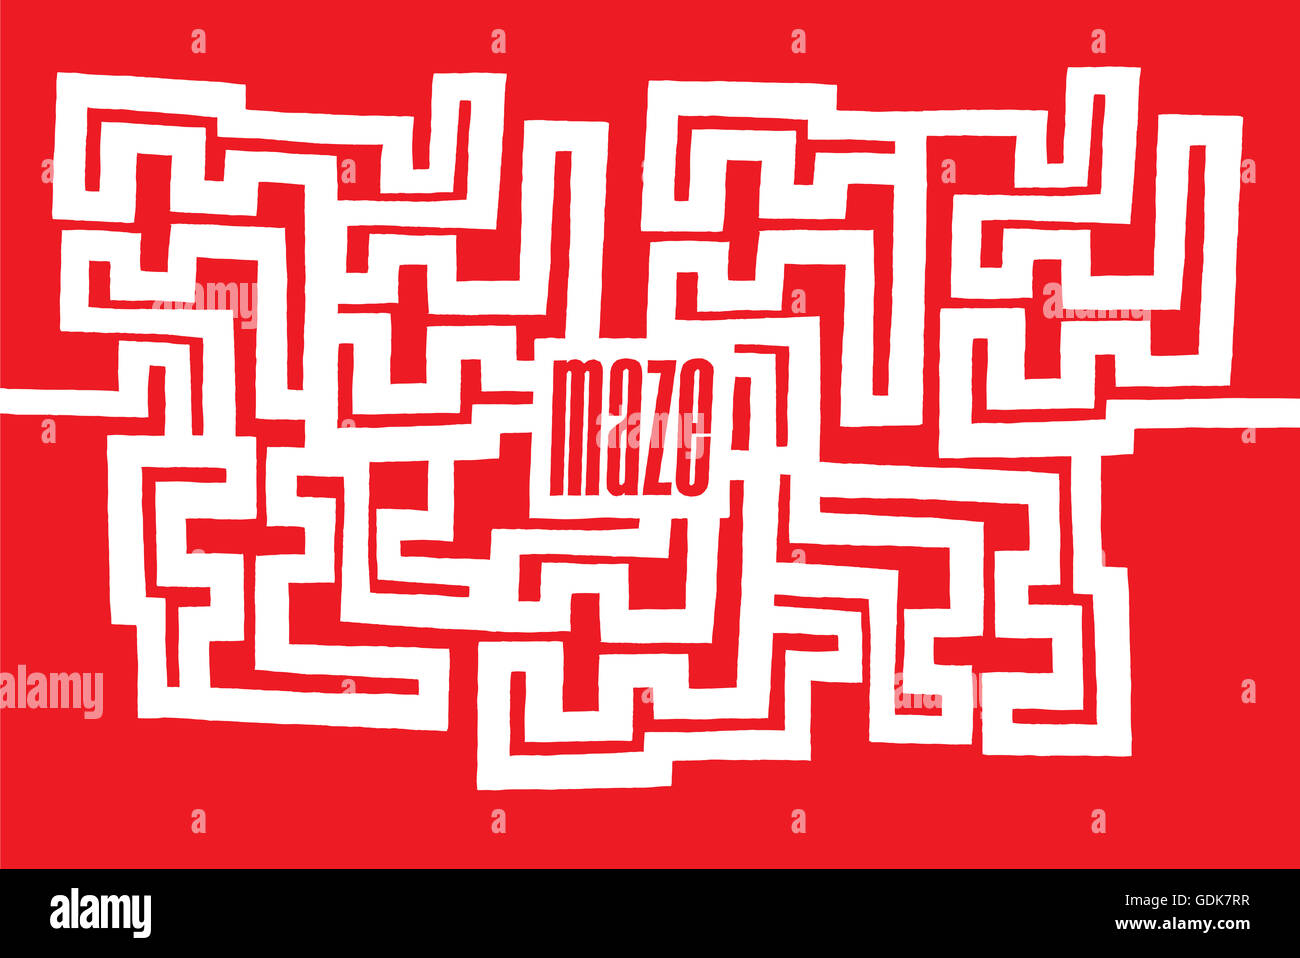 Cartoon-Darstellung der komplexen Labyrinth oder Labyrinth Wort zu seinem Zentrum Stockfoto